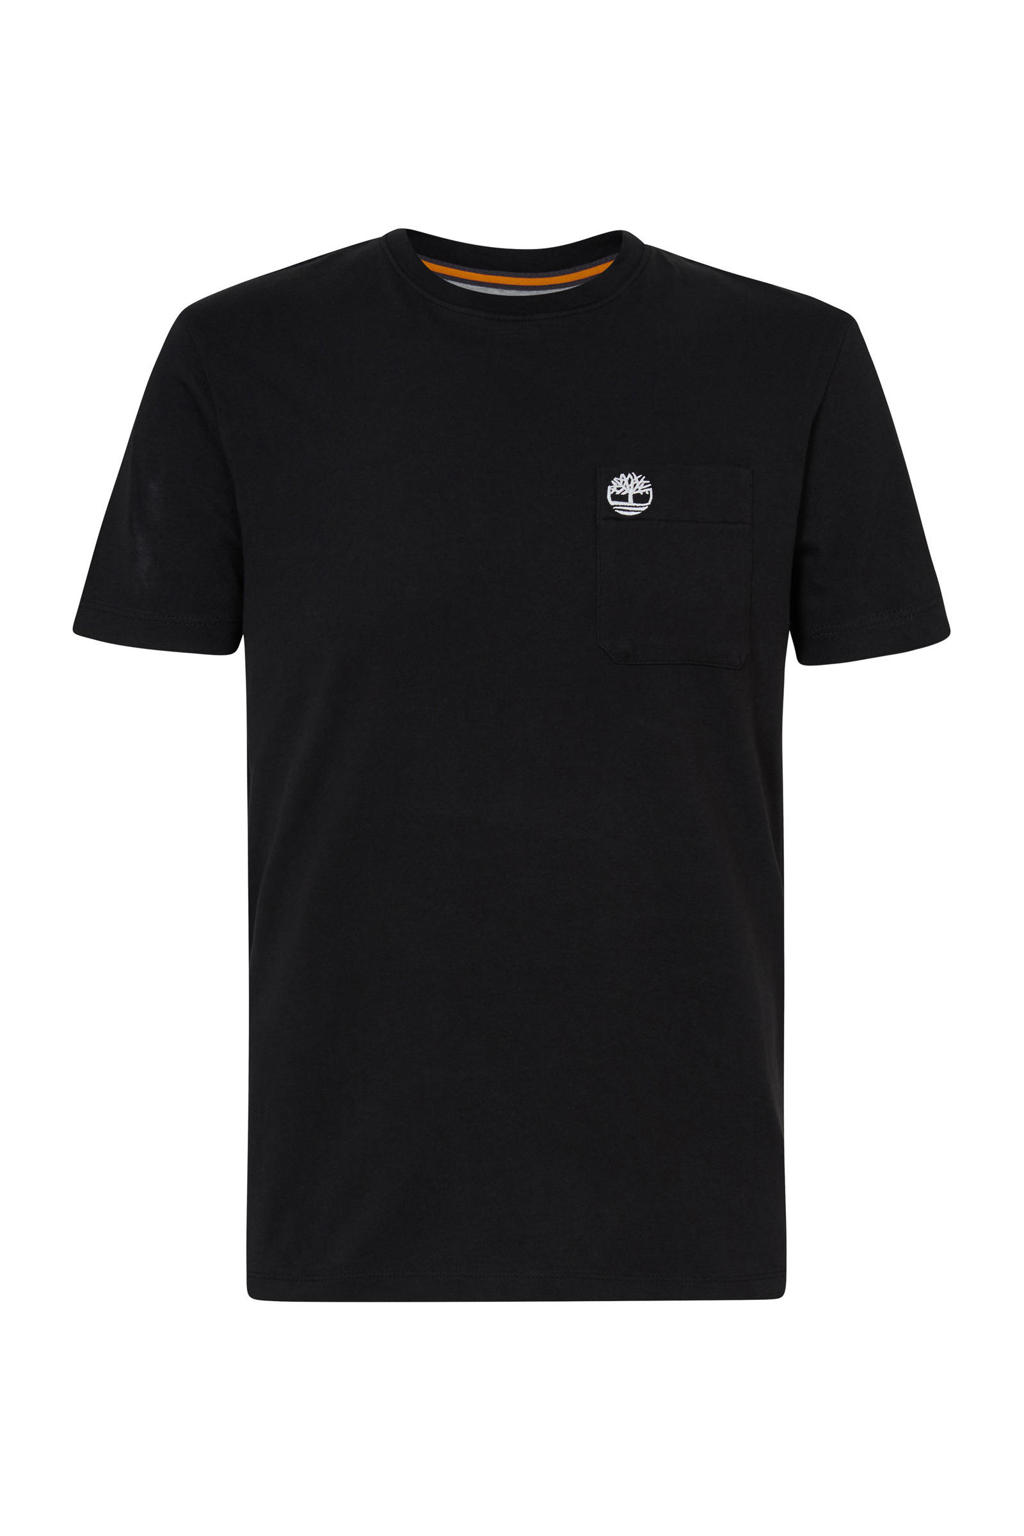 Zwarte heren Timberland T-shirt van biologisch katoen met logo dessin, korte mouwen en ronde hals